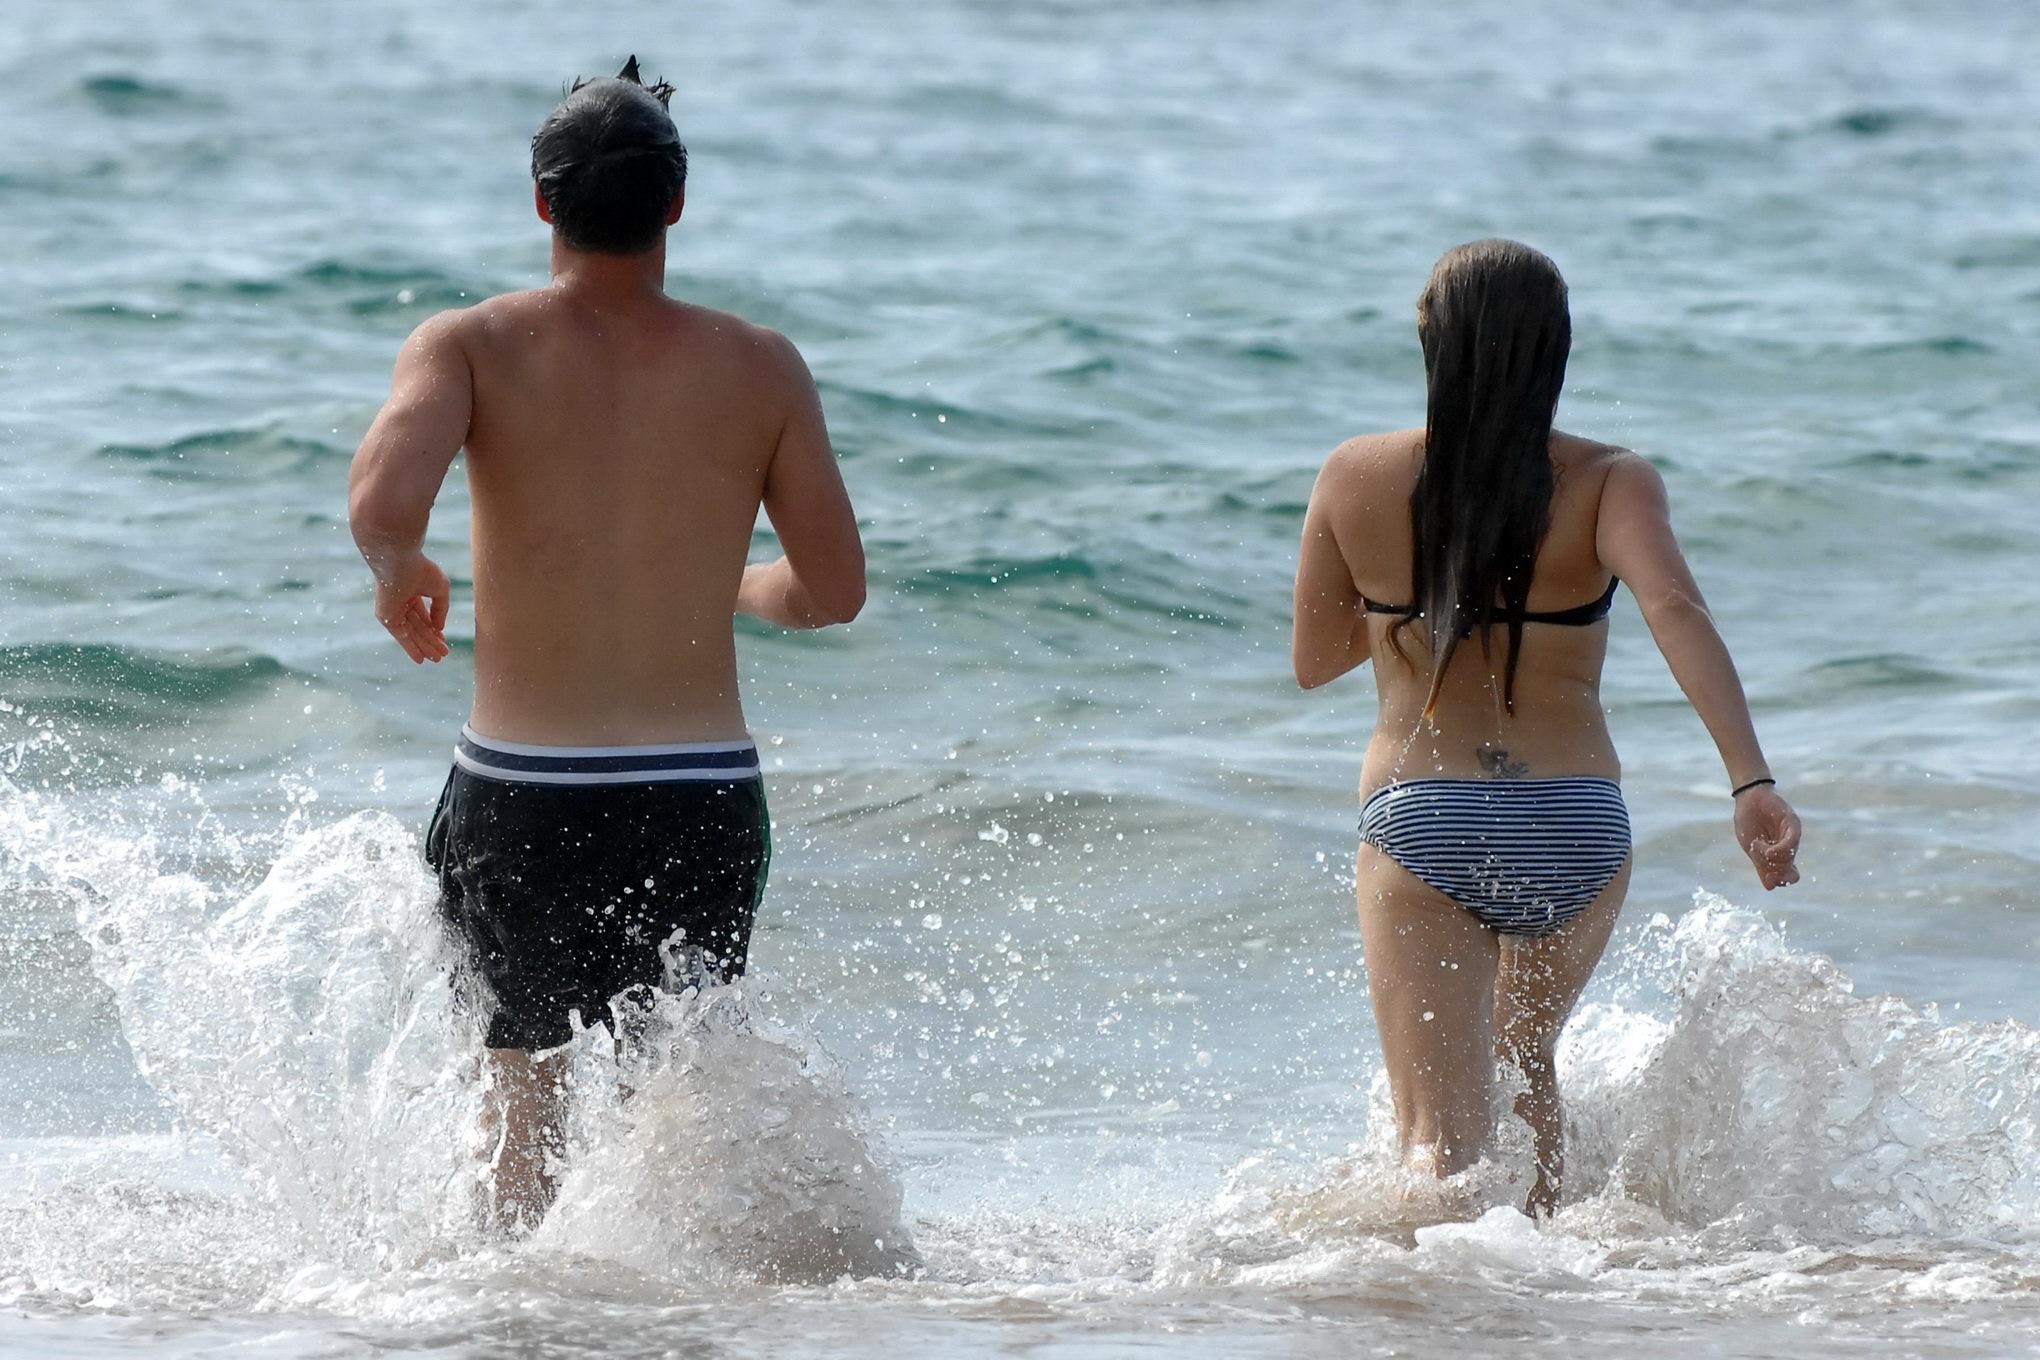 Danielle fishel luciendo su rollizo cuerpo en bikini en una playa de hawaii
 #75214605